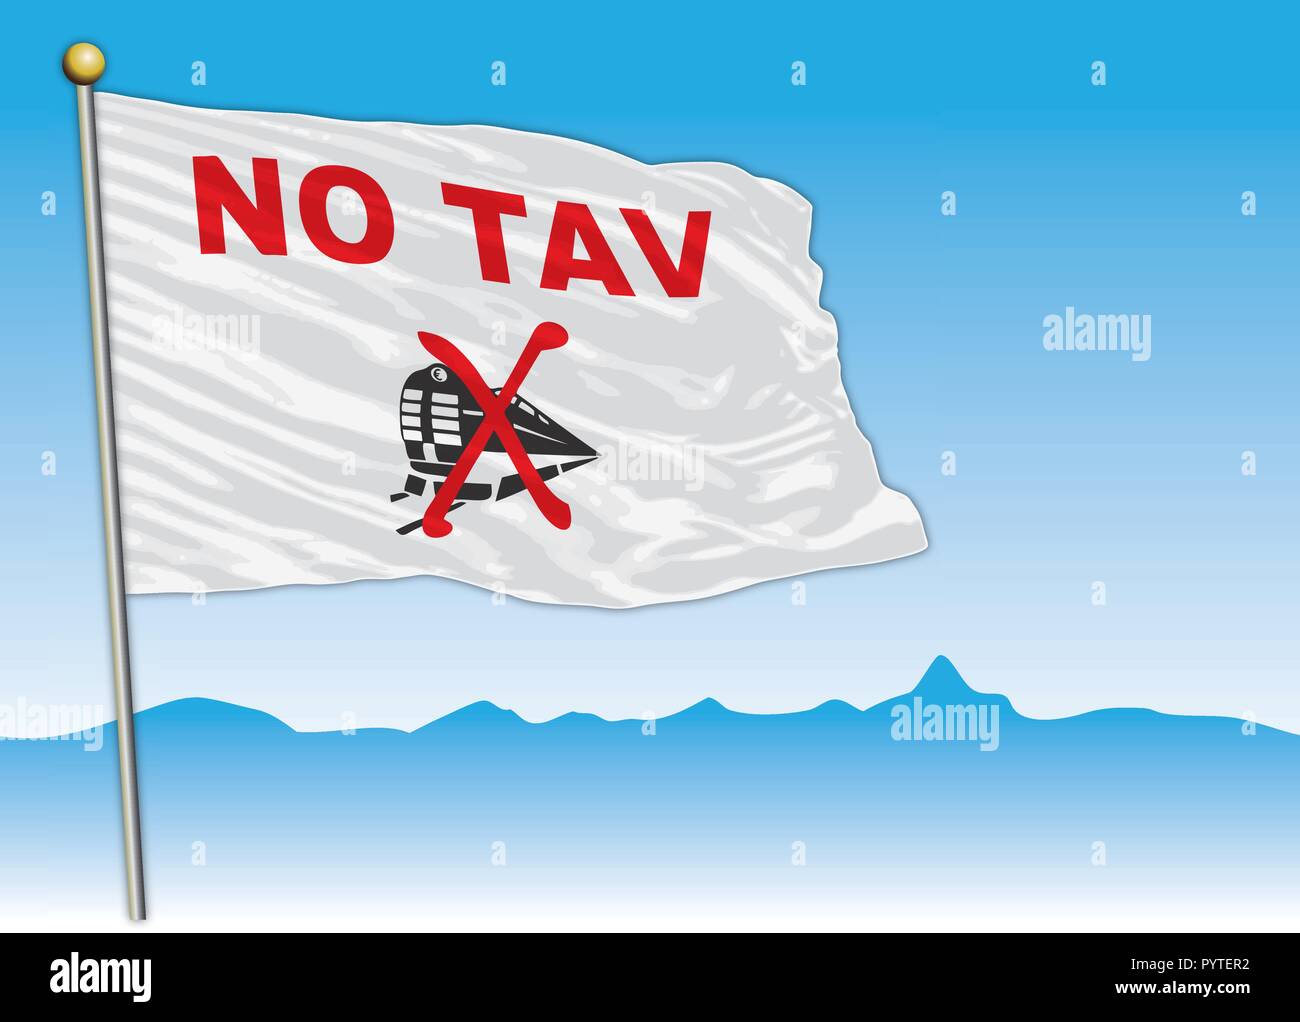 No Tav movement flag, Italy, vector illustration Stock Vector